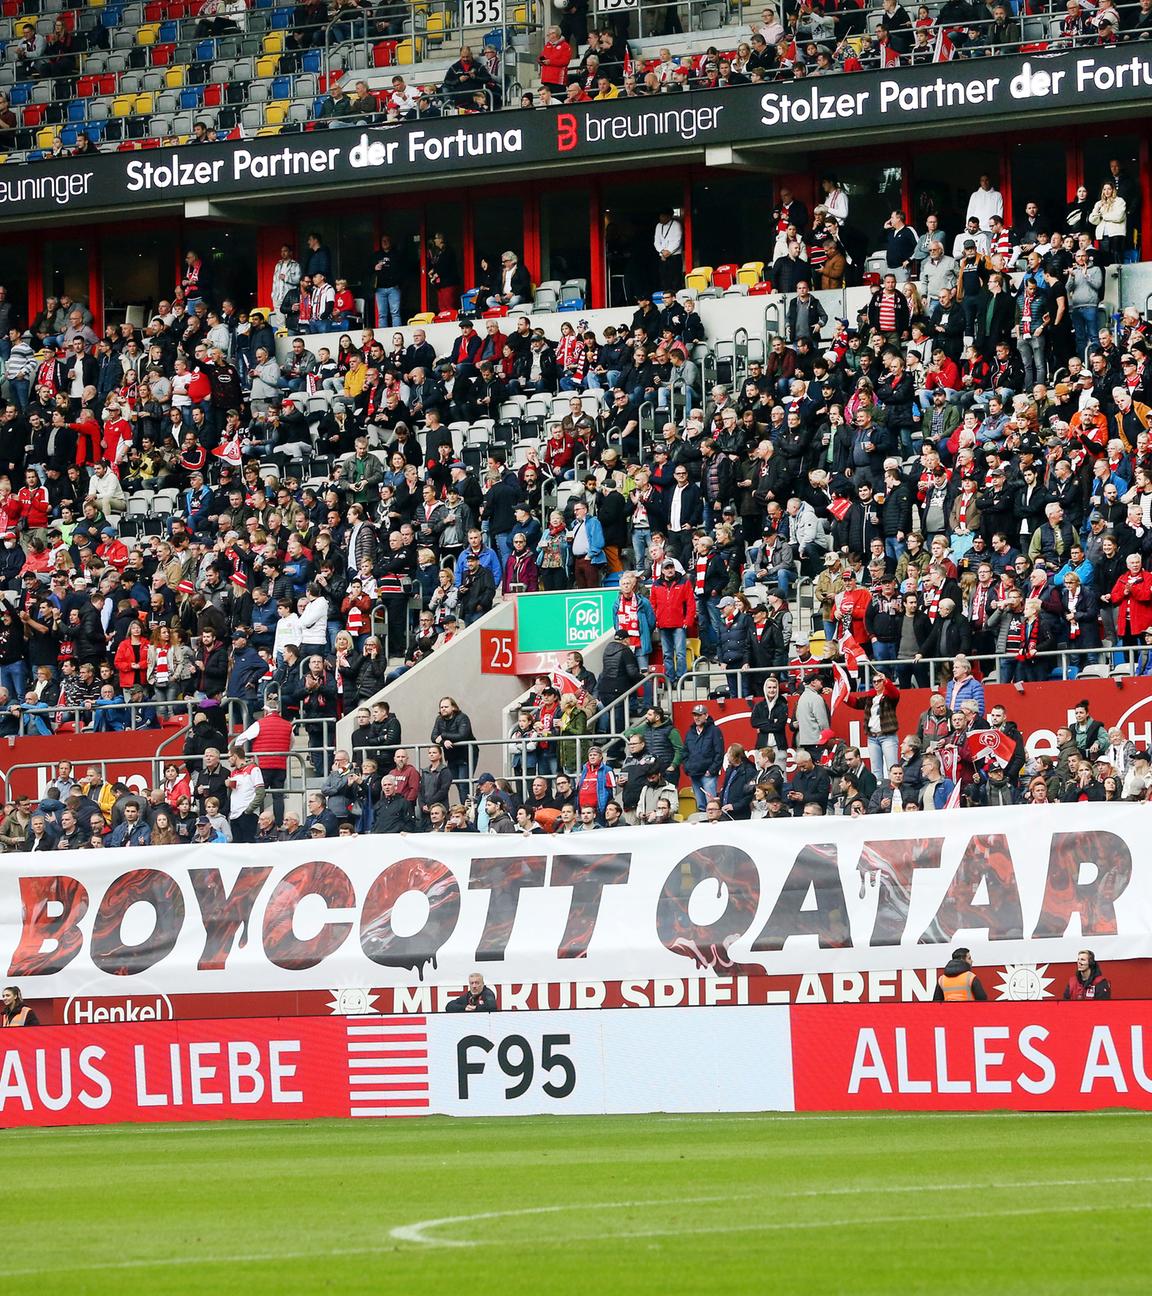 Anhänger von Fortuna Düsseldorf zeigen ein Banner mit der Aufschrift "Boycott Qatar 2022"